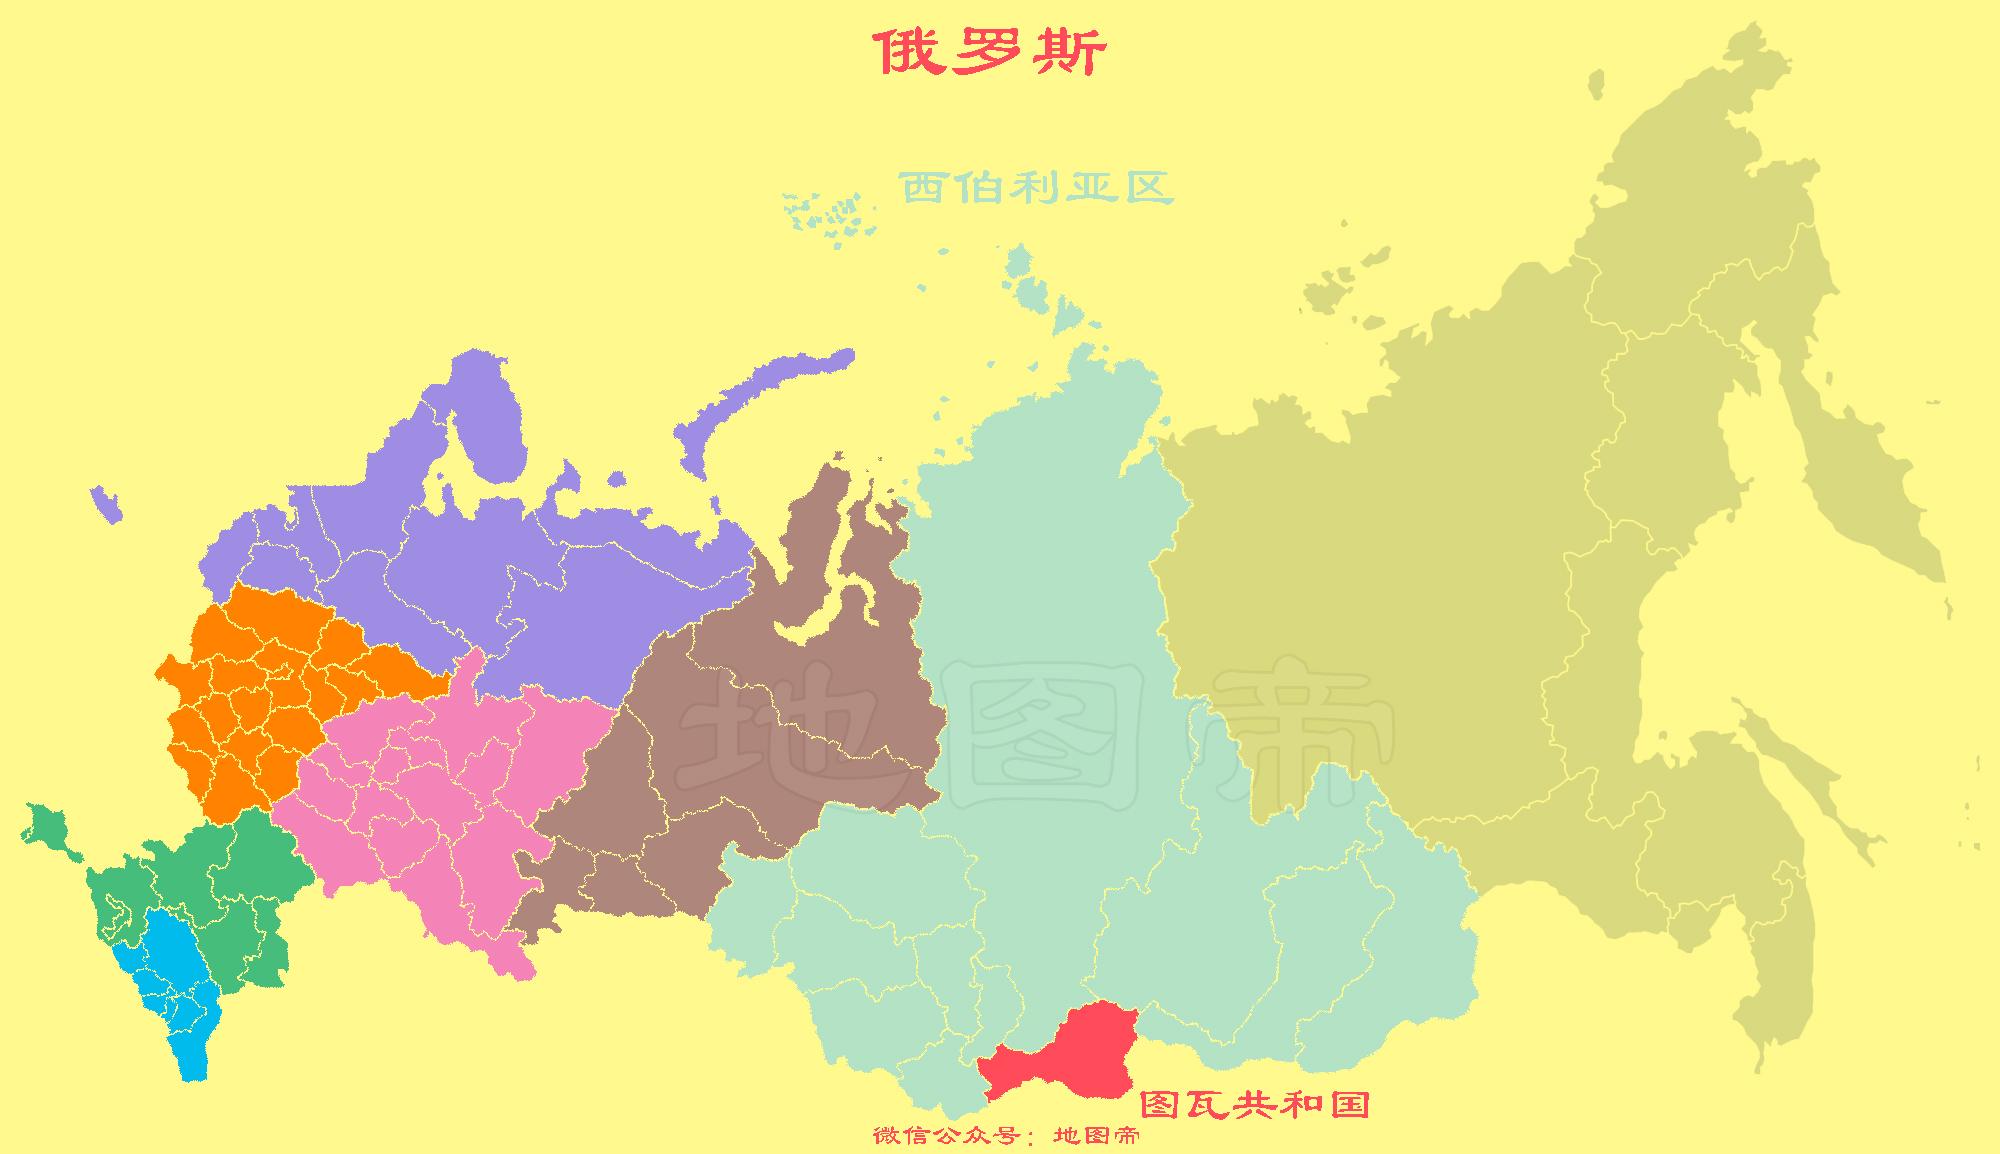 俄罗斯地形图_万图壁纸网